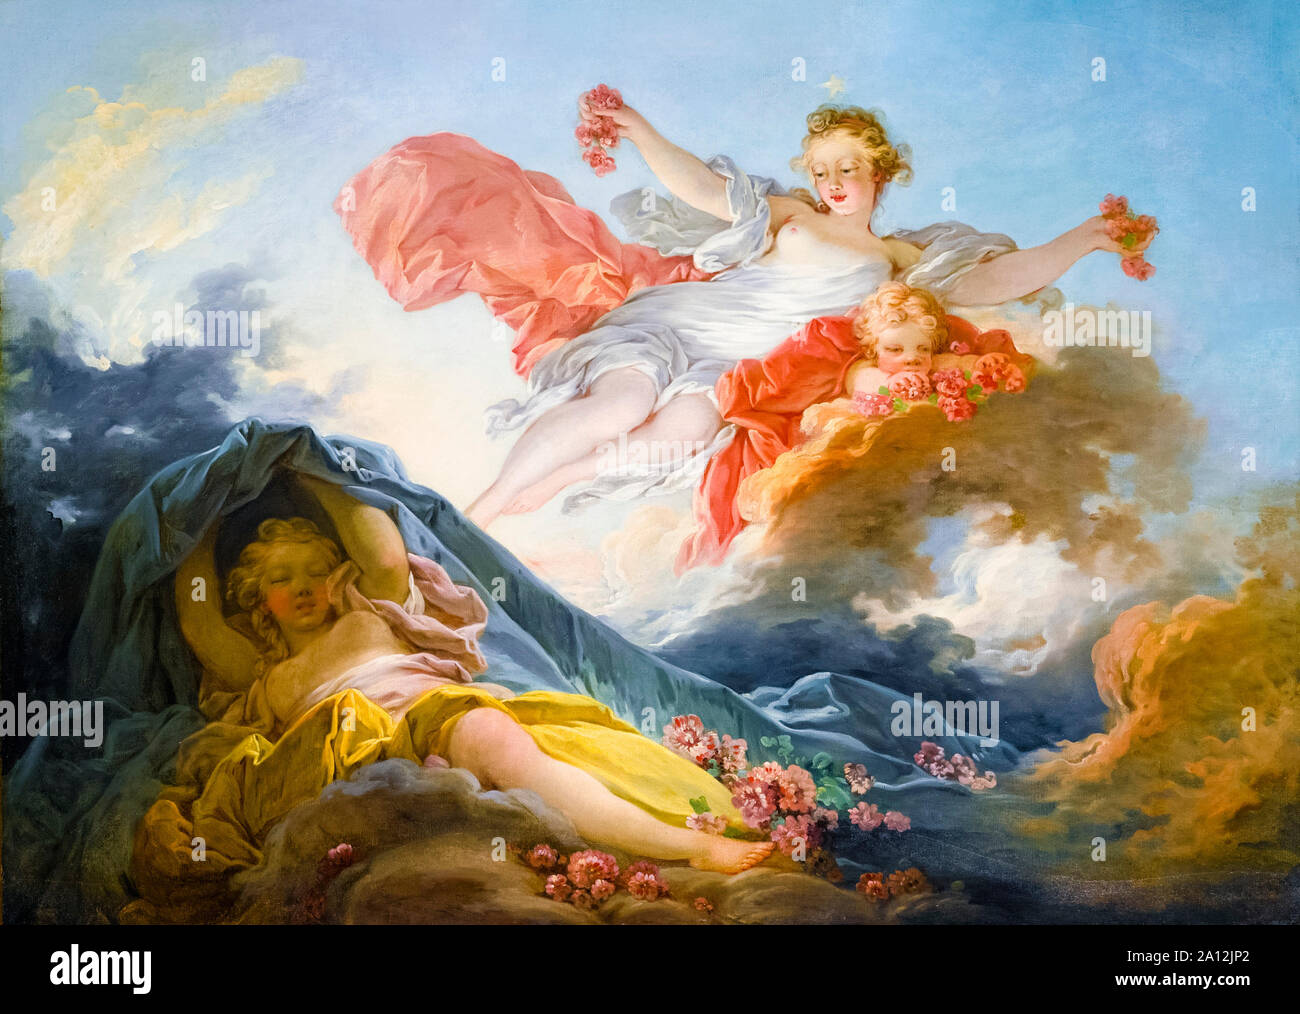 Jean-Honoré Fragonard, peinture, la déesse Aurora triomphant de nuit, 1755-1756 Banque D'Images